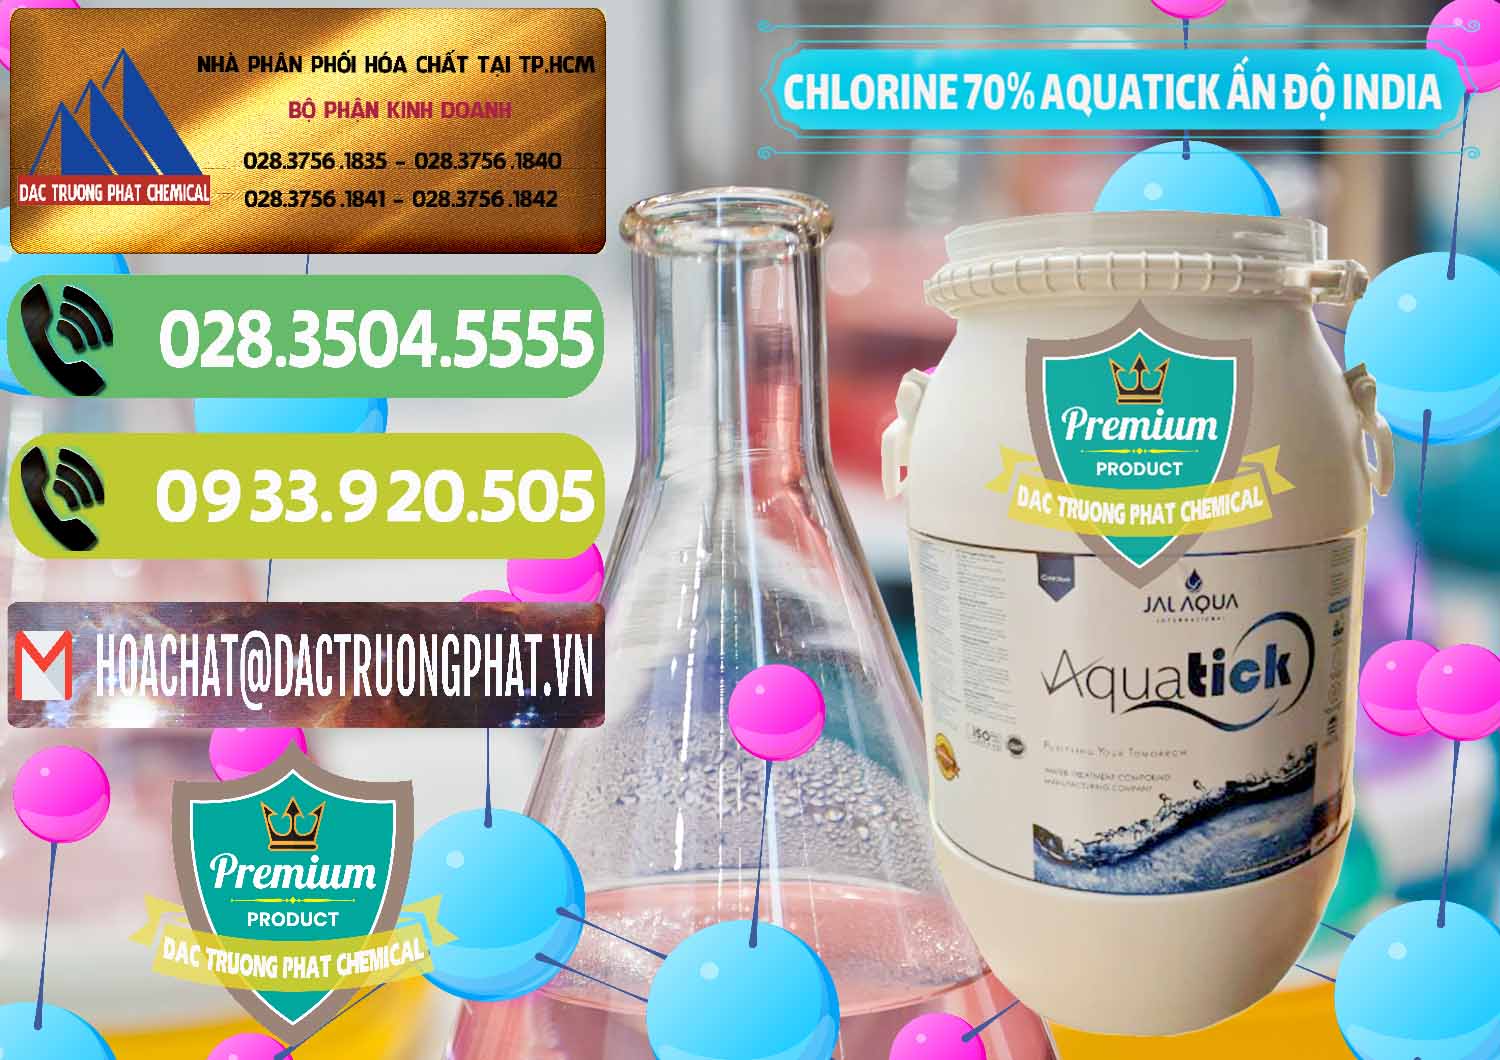 Cty chuyên bán & cung ứng Chlorine – Clorin 70% Aquatick Jal Aqua Ấn Độ India - 0215 - Cty cung ứng và phân phối hóa chất tại TP.HCM - hoachatmientay.vn